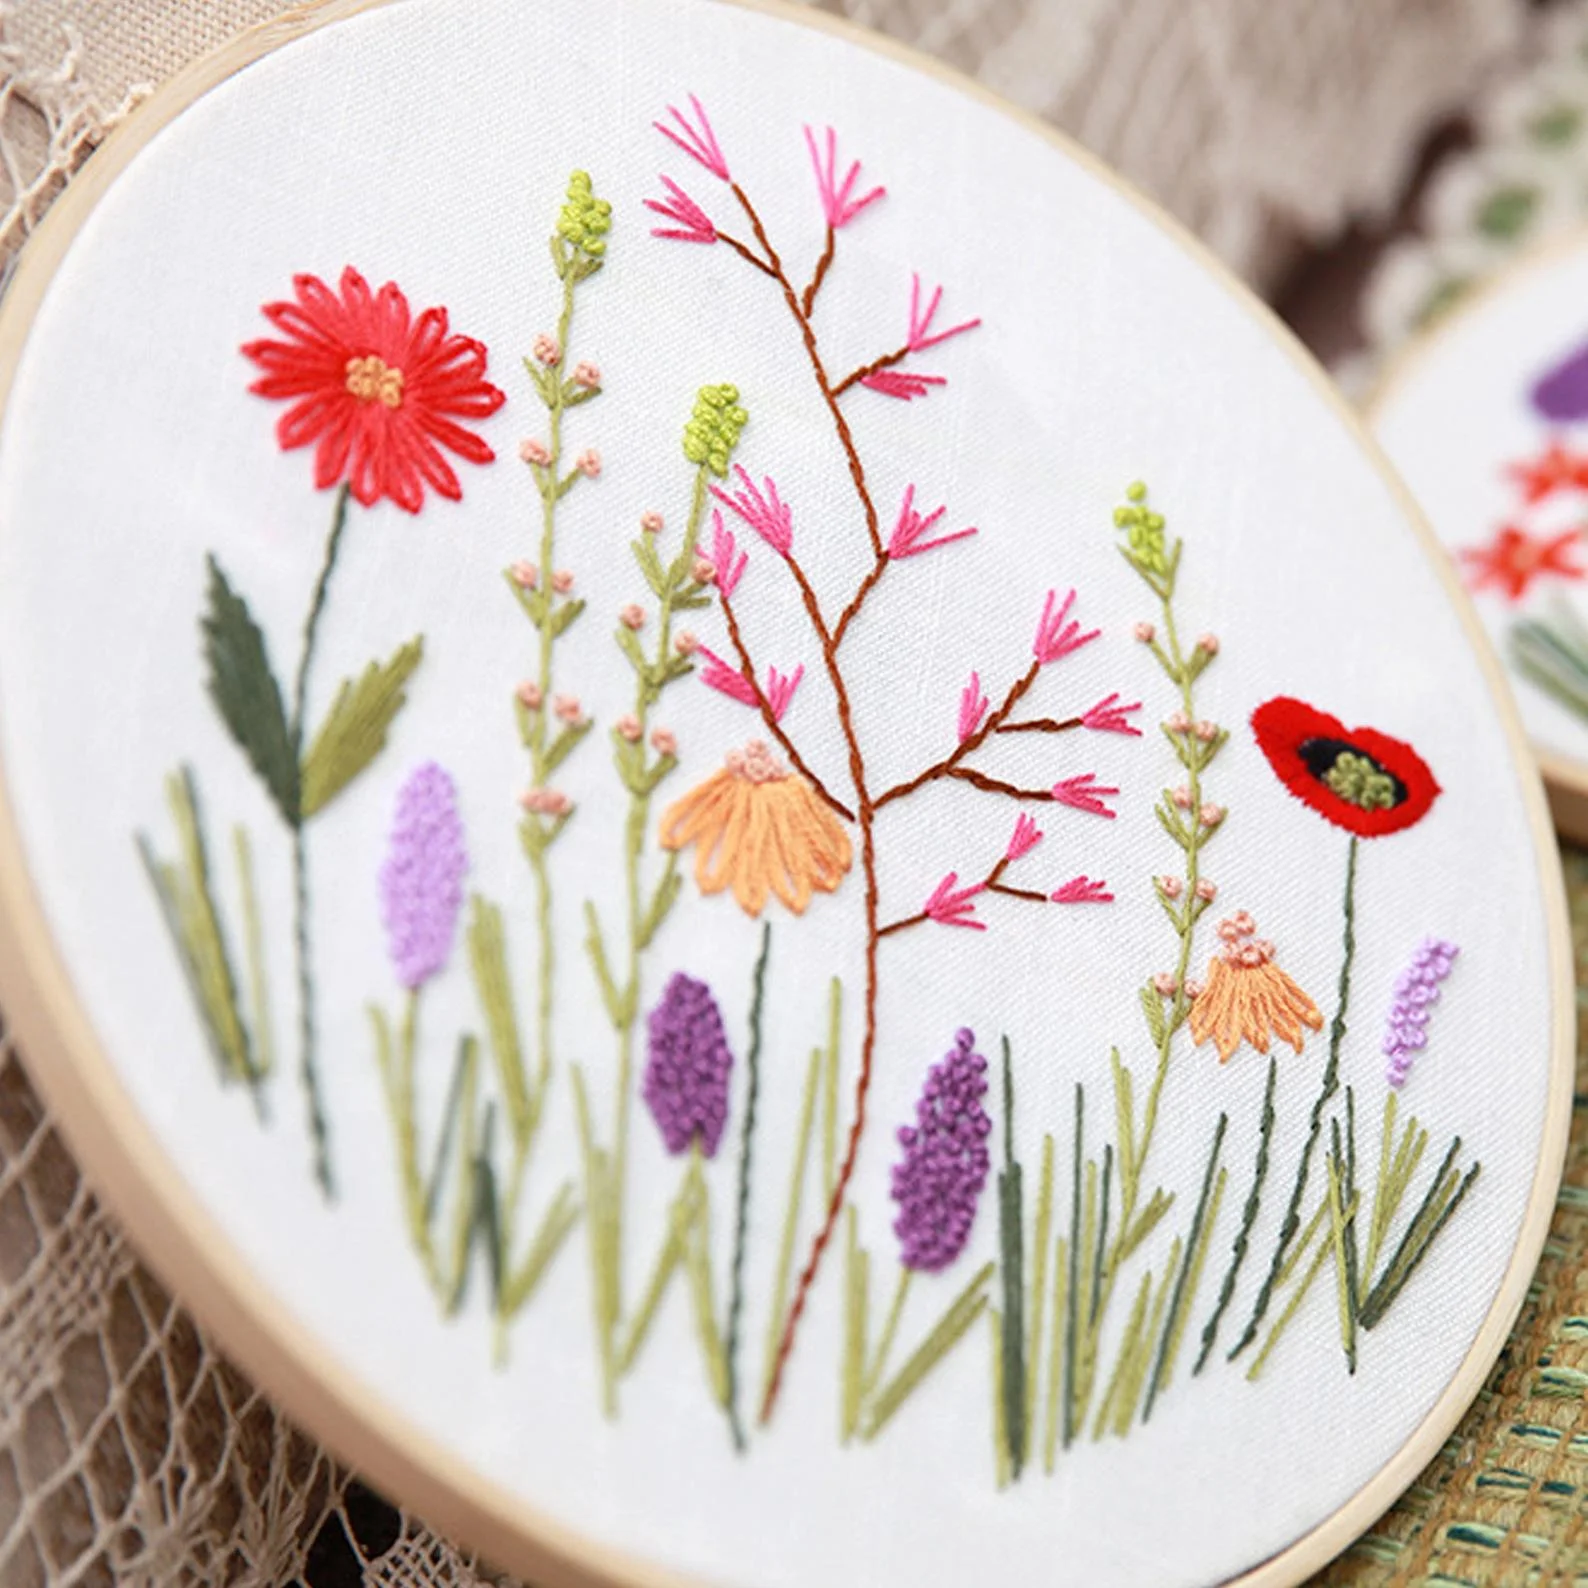 Deconeer + Wild Flower Embroidery Kit For Beginner